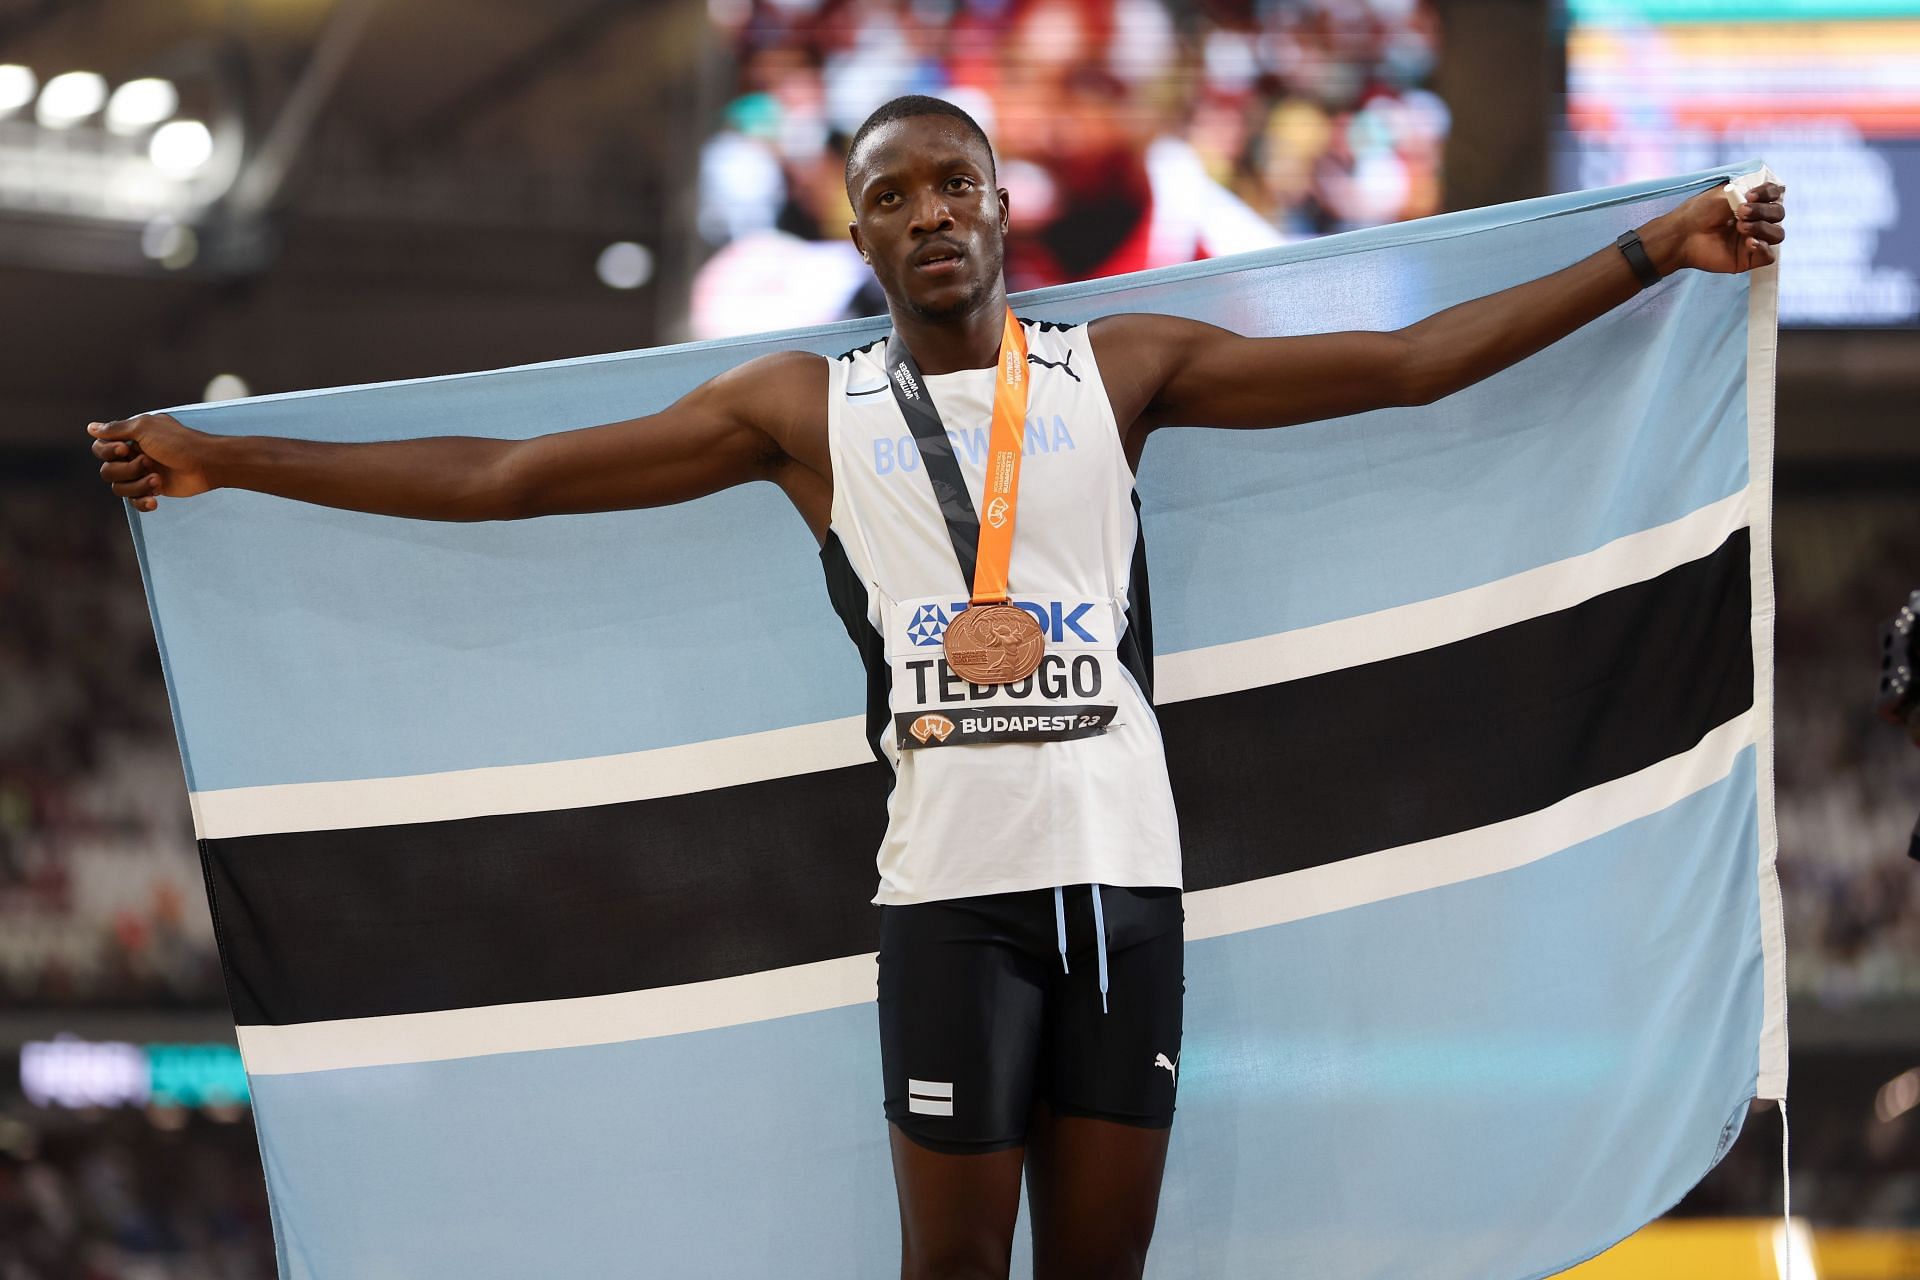 Letsile Tebogo at the World Athletics Championships Budapest 2023.